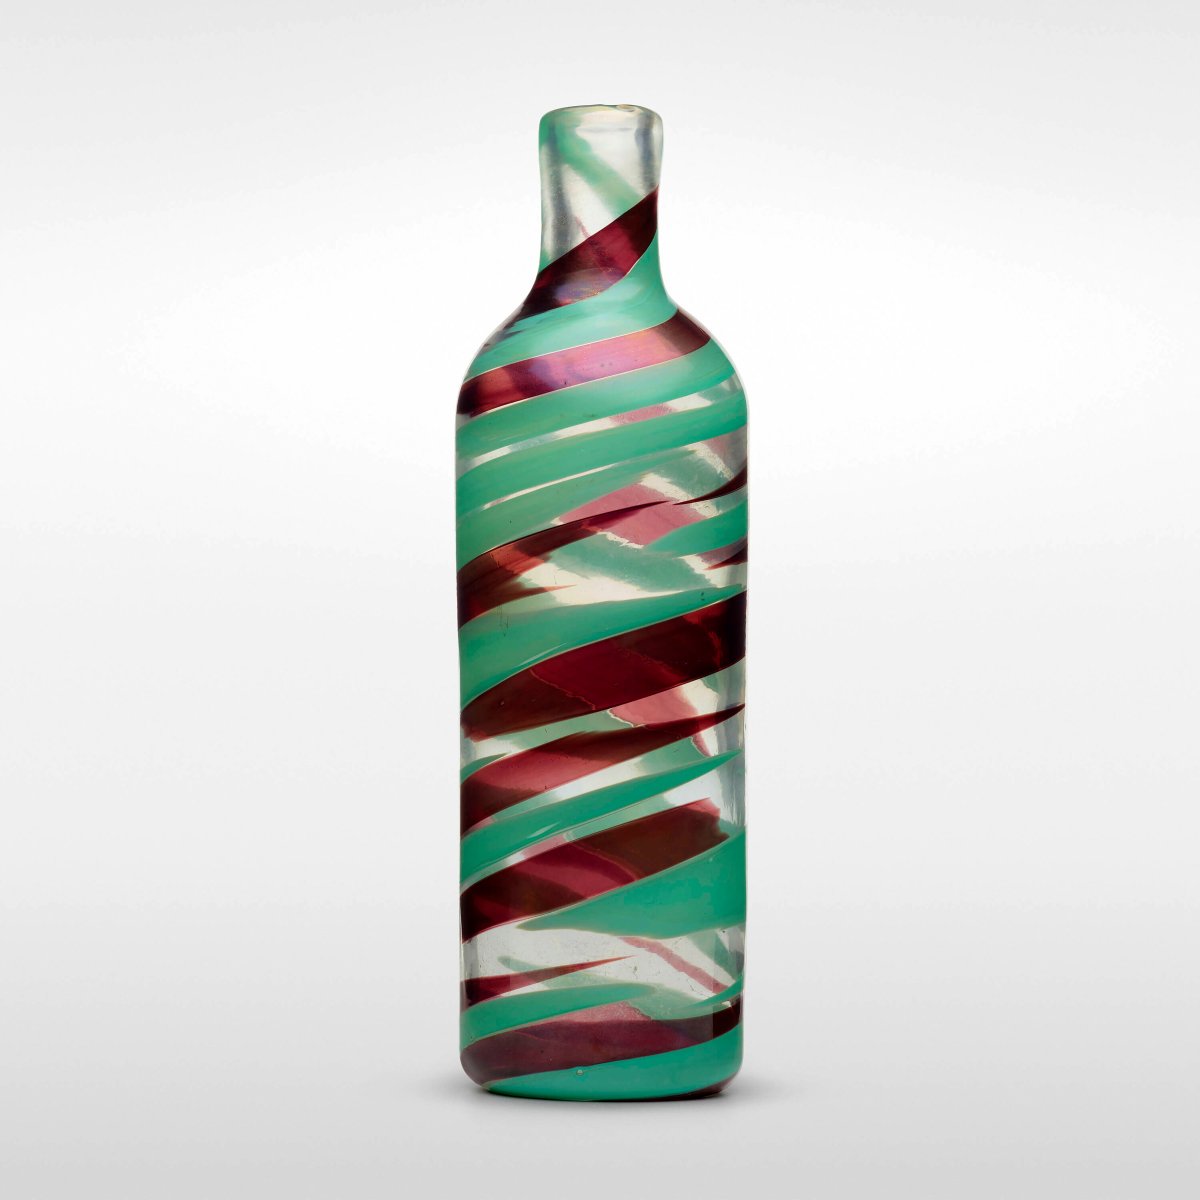 赖特拍卖行提供的这张图片展示了意大利建筑师兼设计师卡洛·斯卡帕 (Carlo Scarpa) 设计的一个花瓶，该花瓶是他 20 世纪 40 年代 Pennelatte 系列的一部分。 杰西卡·文森特 (Jessica Vincent) 于 6 月在弗吉尼亚州里士满郊外的一家 Goodwill 商店以 3.99 美元的价格购买了它。